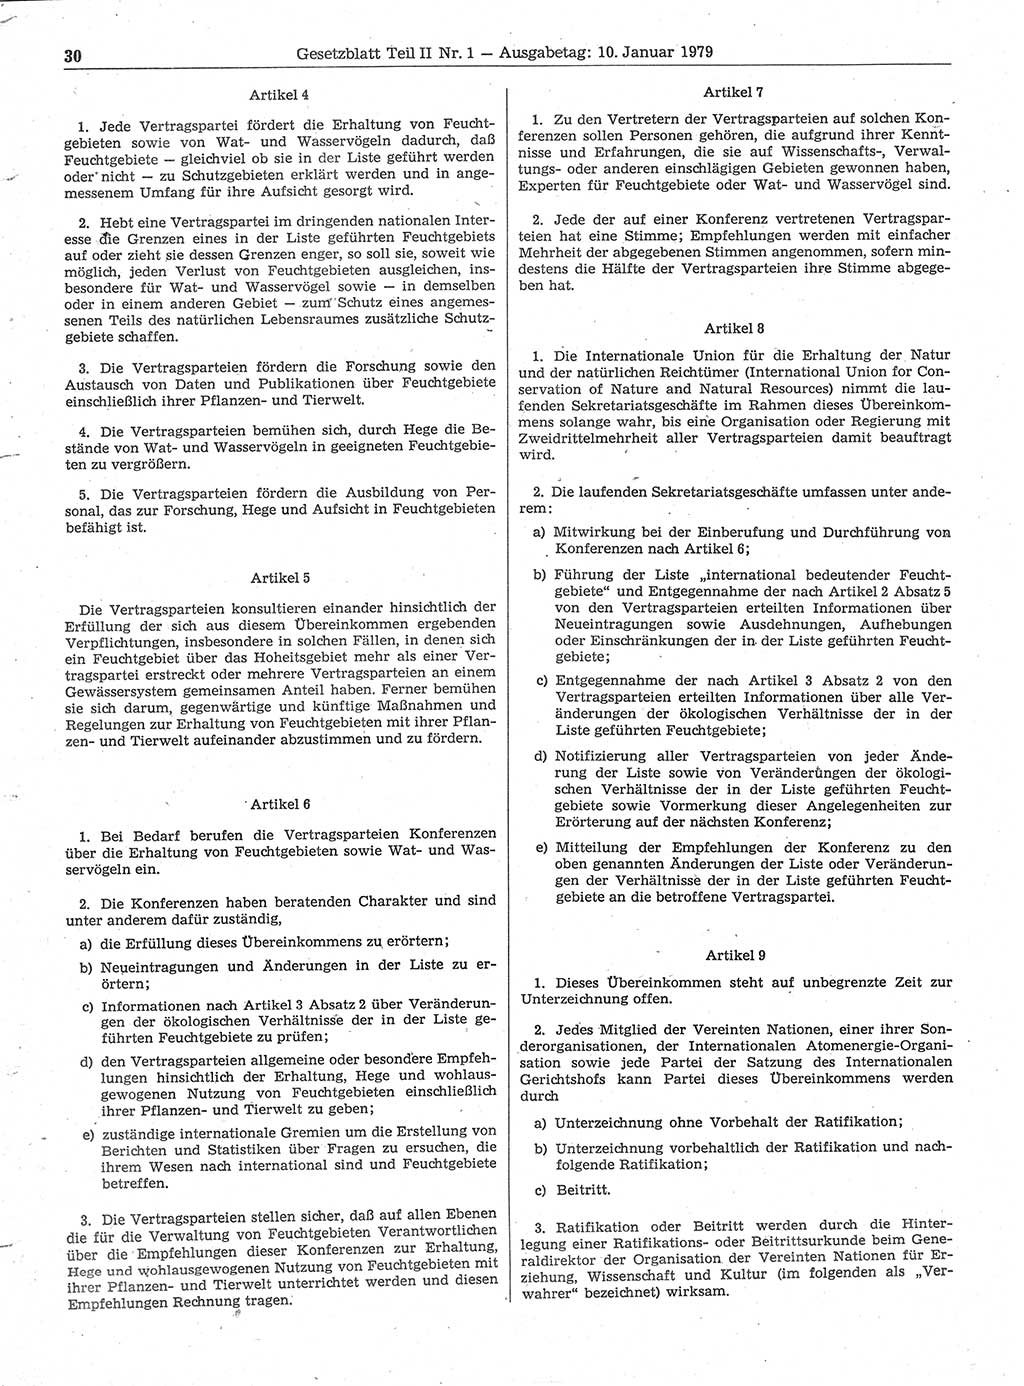 Gesetzblatt (GBl.) der Deutschen Demokratischen Republik (DDR) Teil ⅠⅠ 1979, Seite 30 (GBl. DDR ⅠⅠ 1979, S. 30)